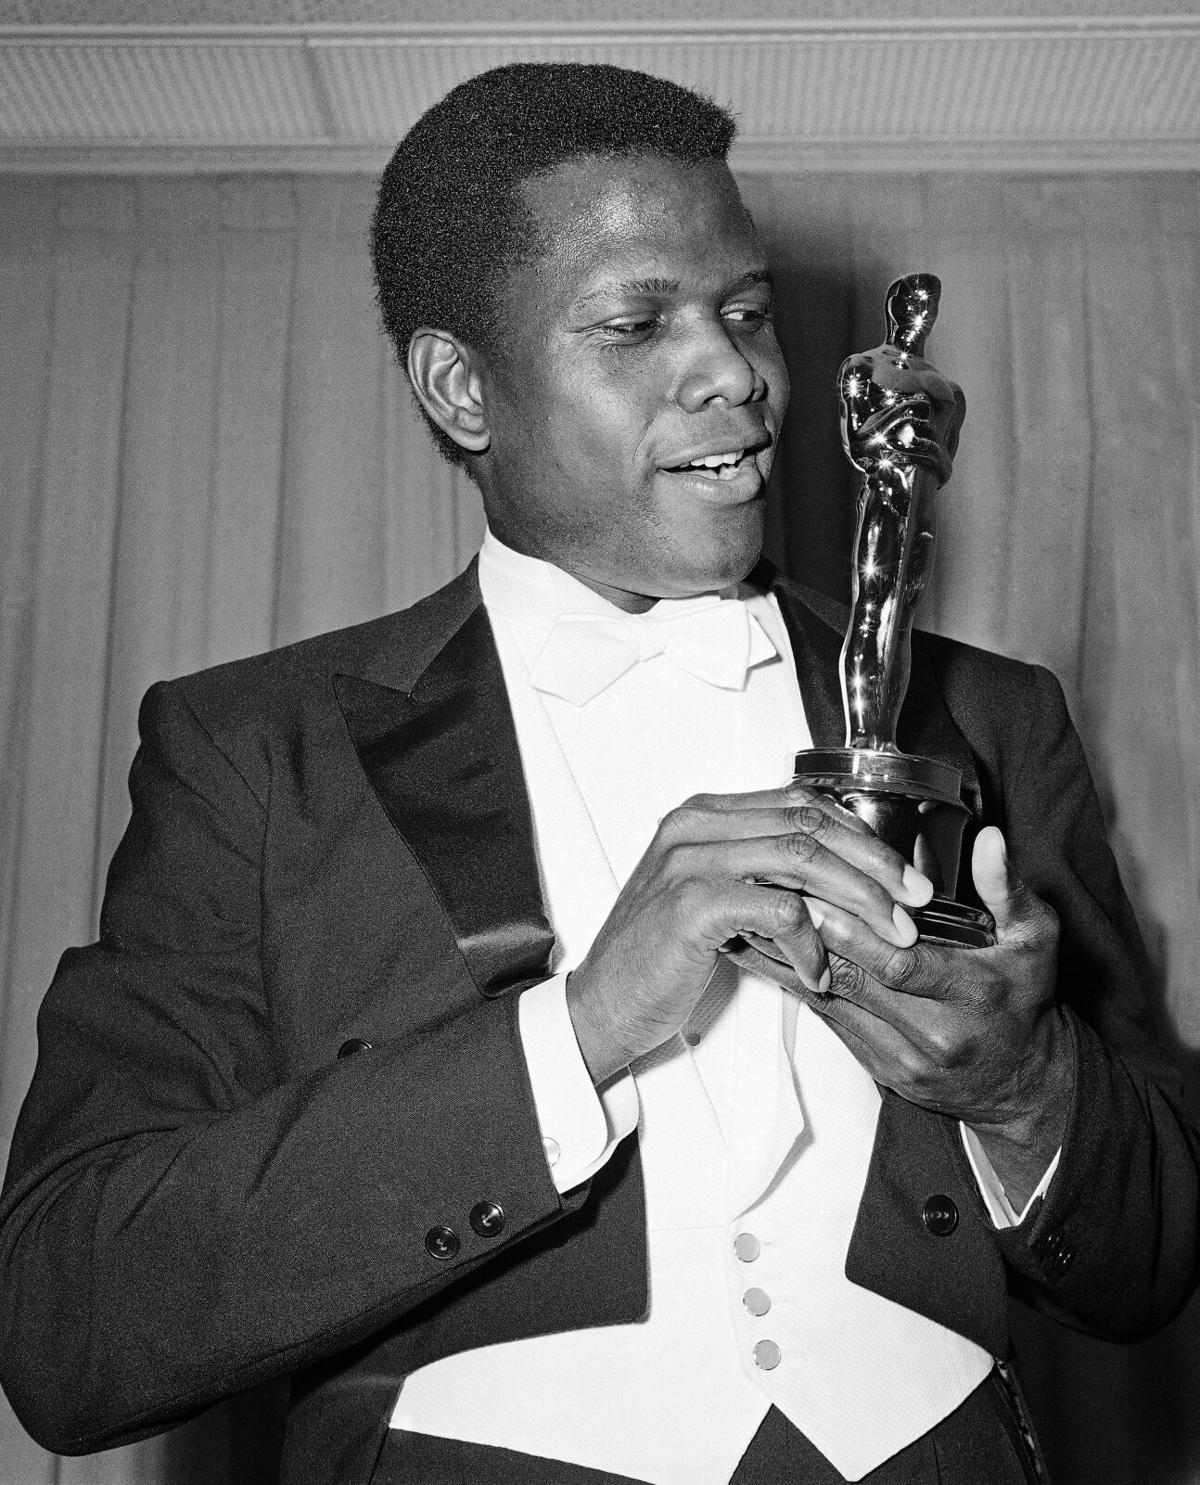 36th Annual Academy Awards